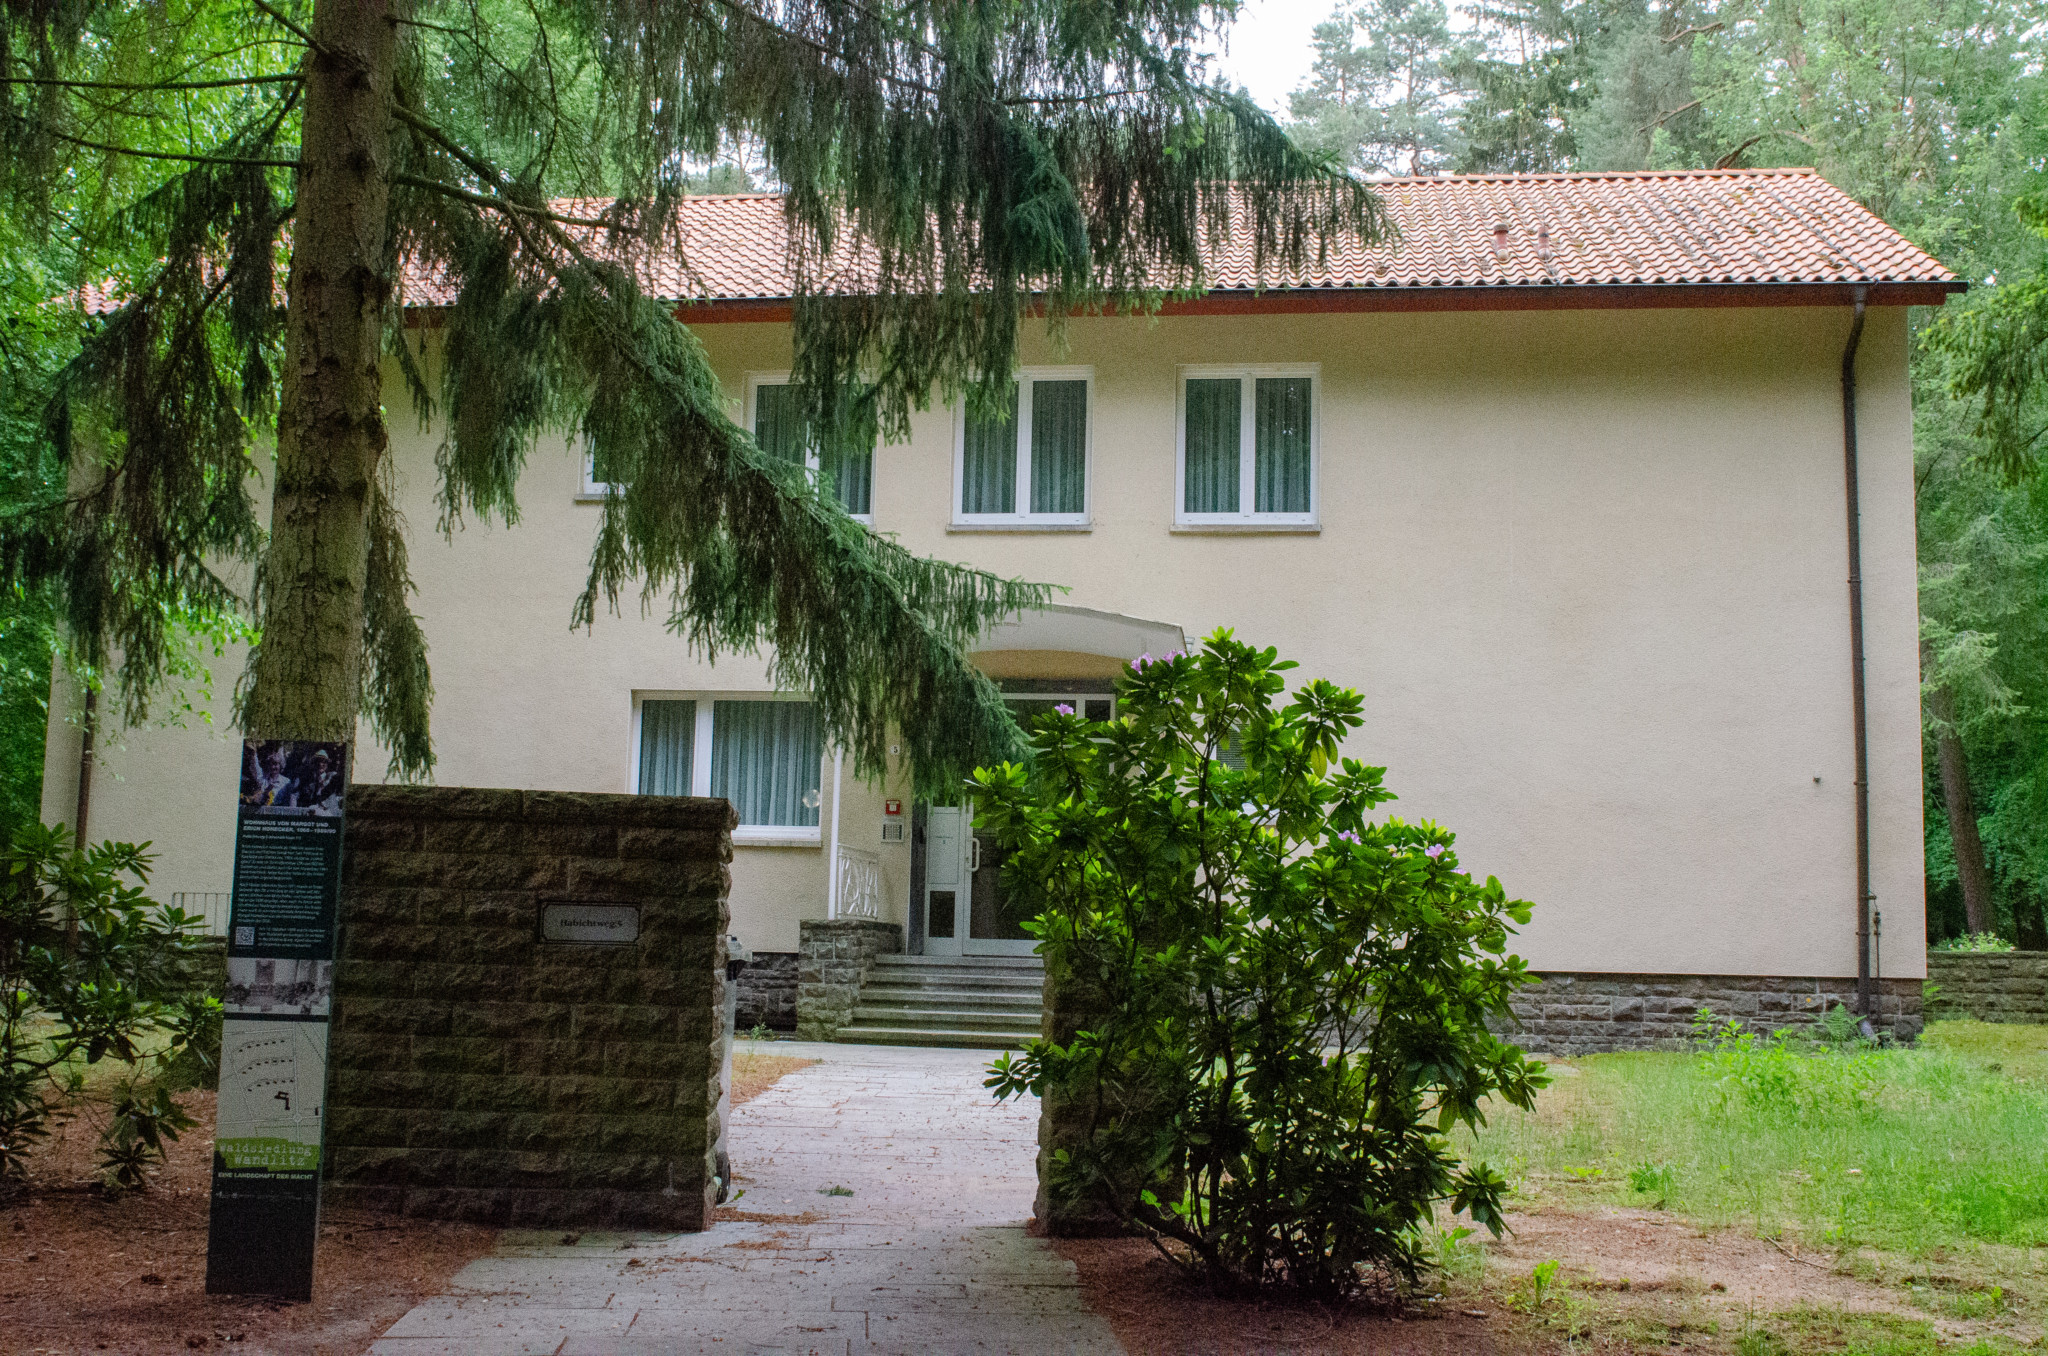 Das Honeckers Haus in der Waldsiedlung Wandlitz zählen viele zu den interessantesten Ausflugszielen in Brandenburg